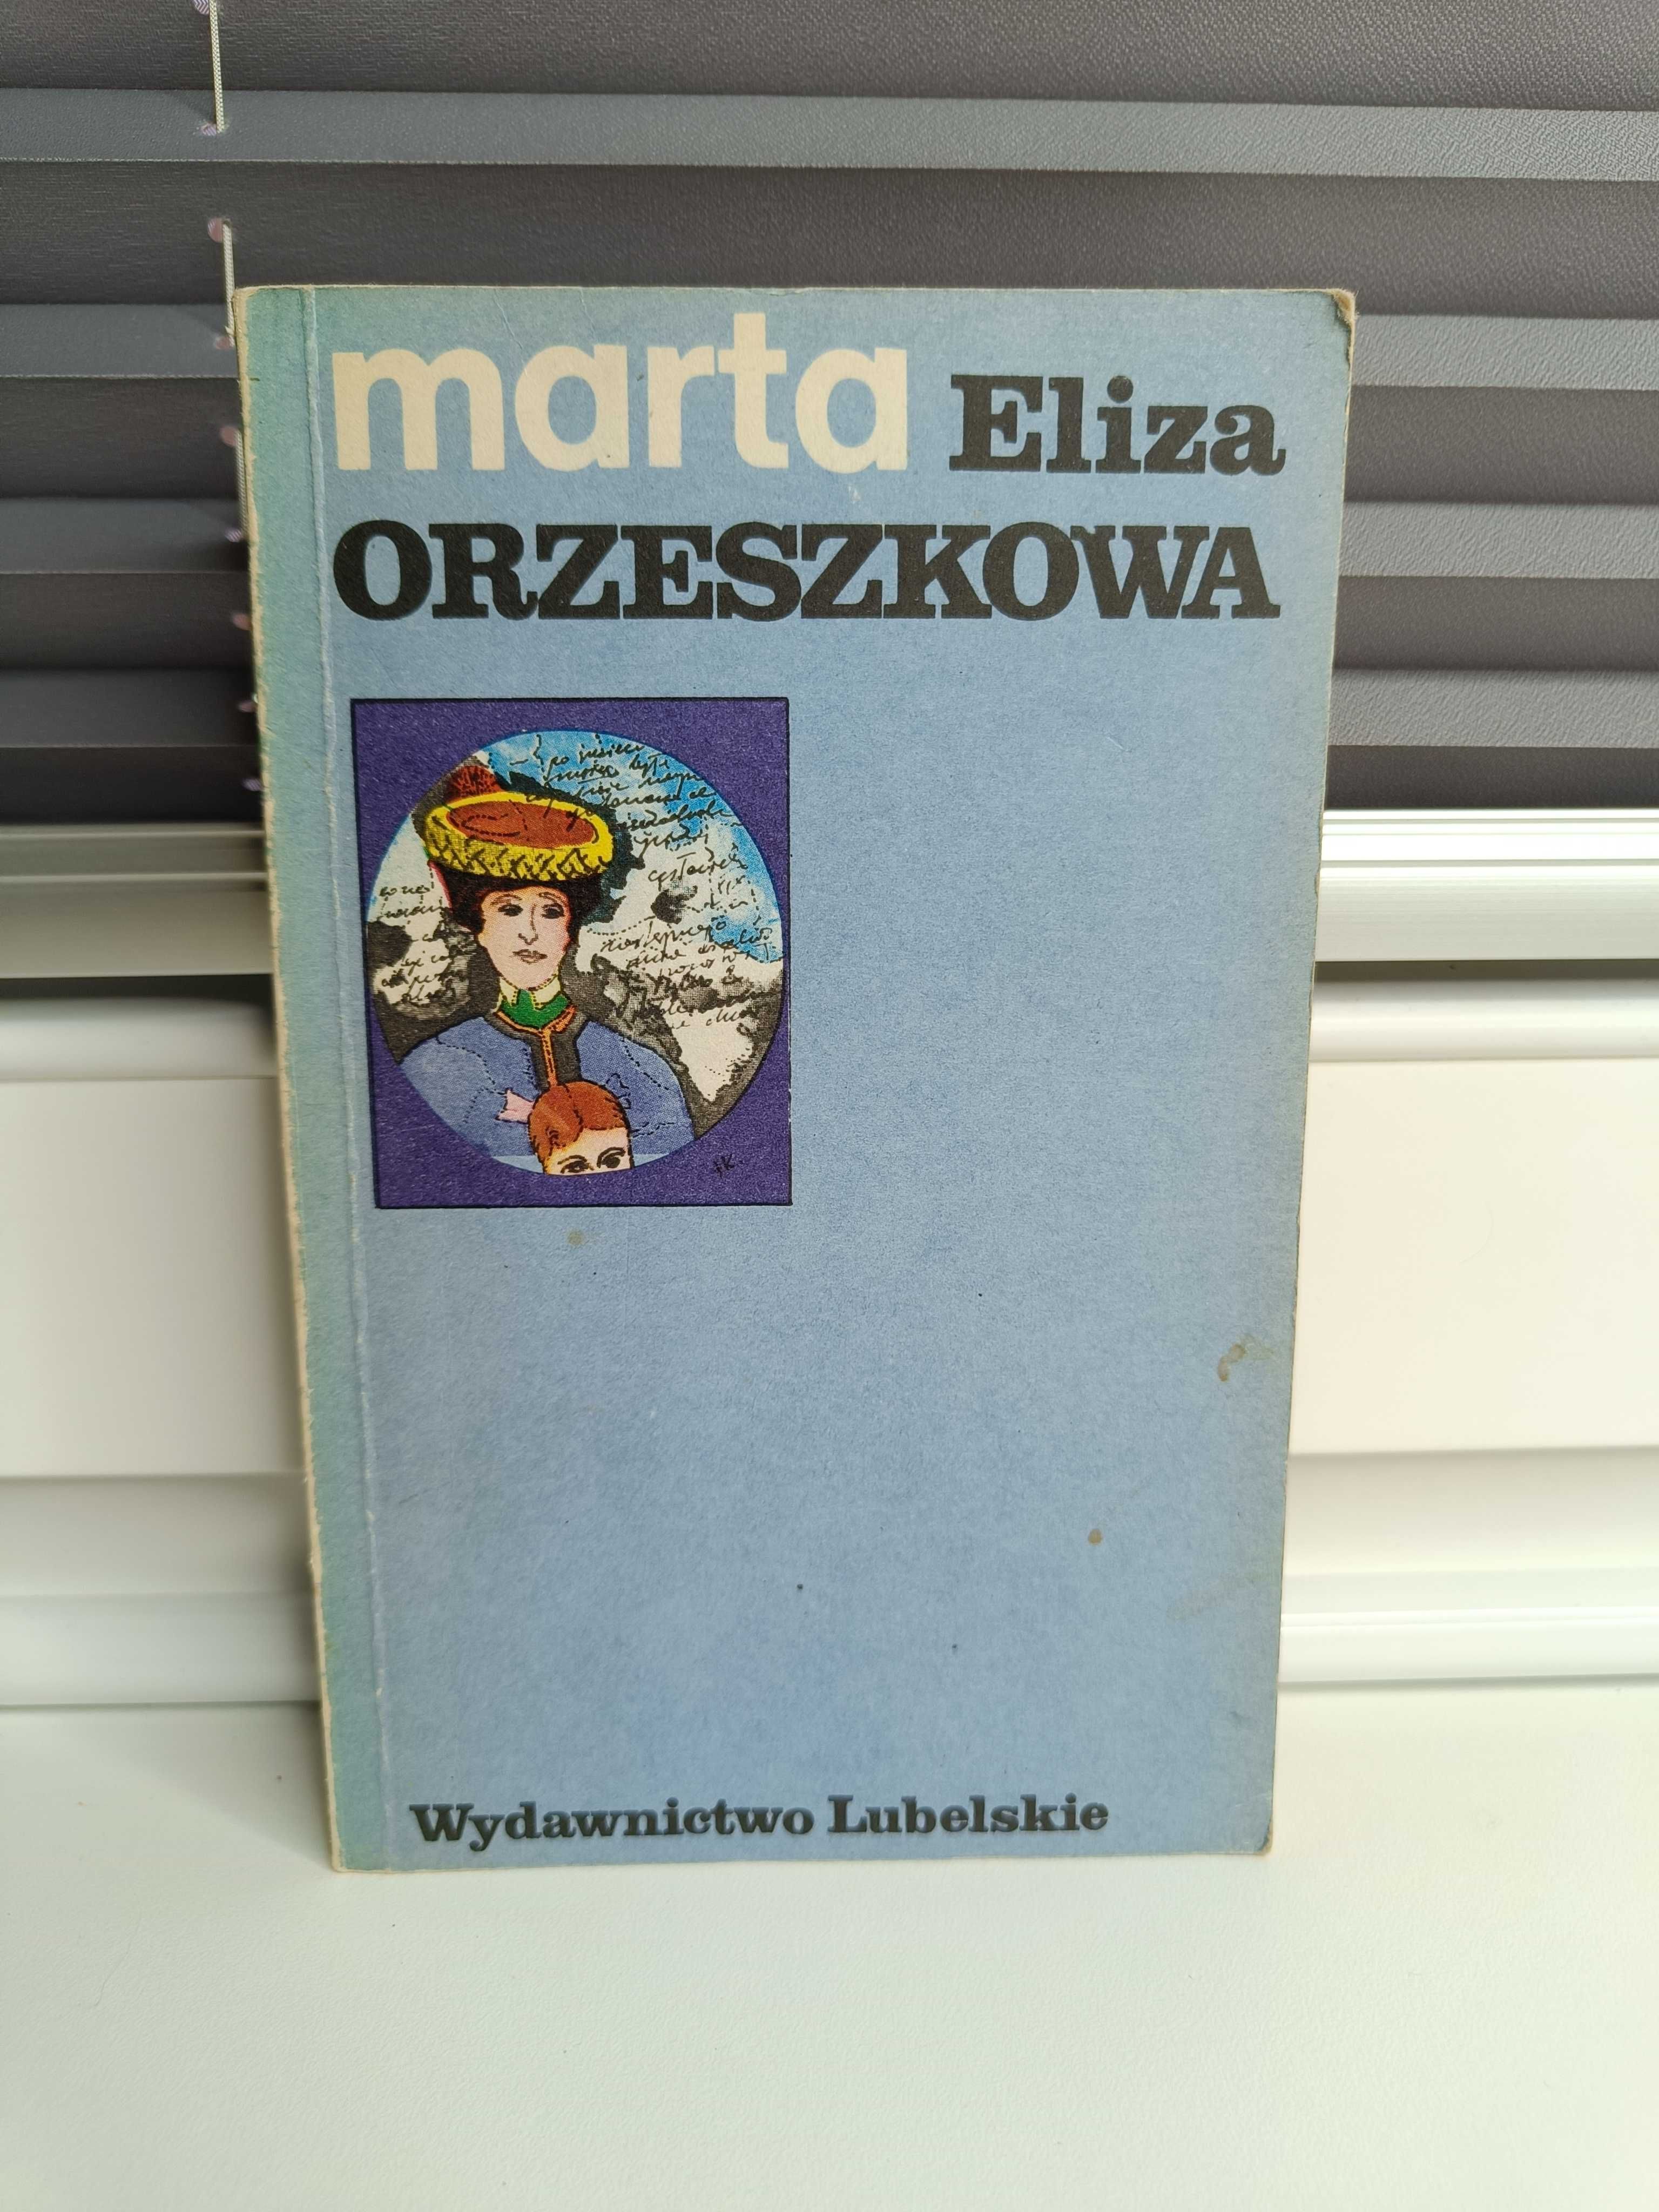 Eliza Orzeszkowa "Marta"